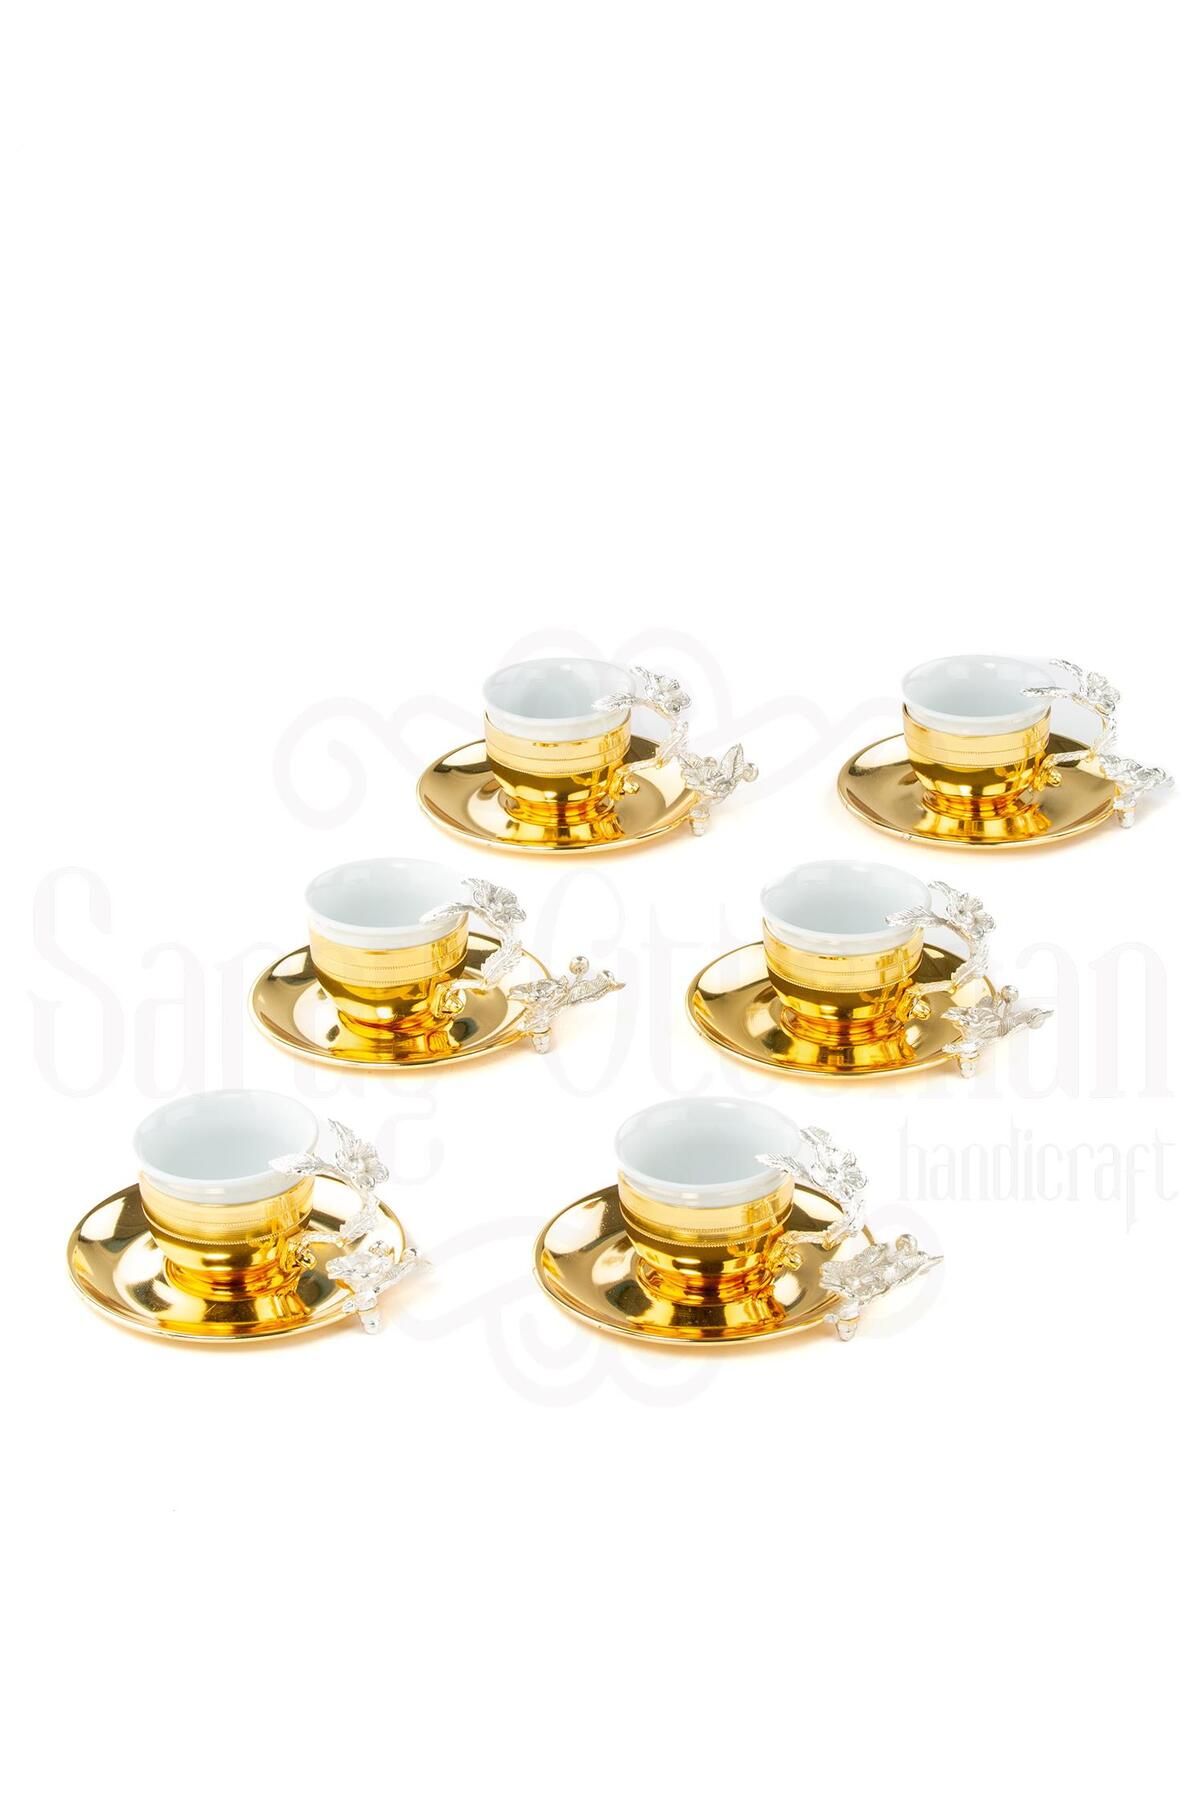 Saray Ottoman Bakır Kahve Fincanı Porselen Kahve Fincanı Nikel Japon Gülü Çizgili 6'lı Kahve Fincanı Altın